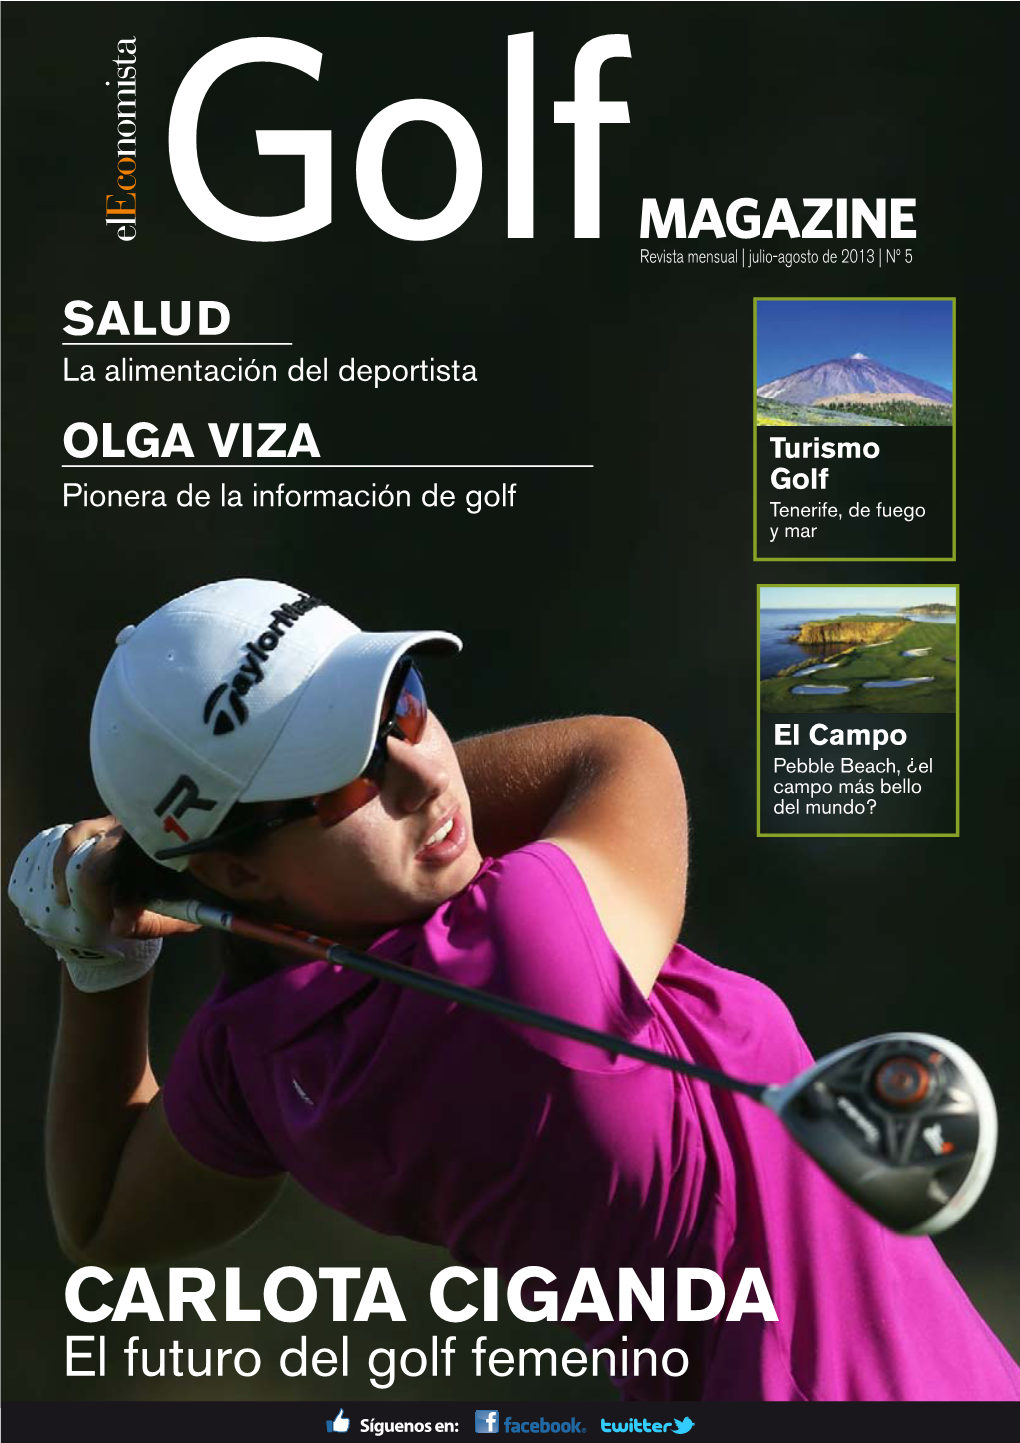 CARLOTA CIGANDA El Futuro Del Golf Femenino